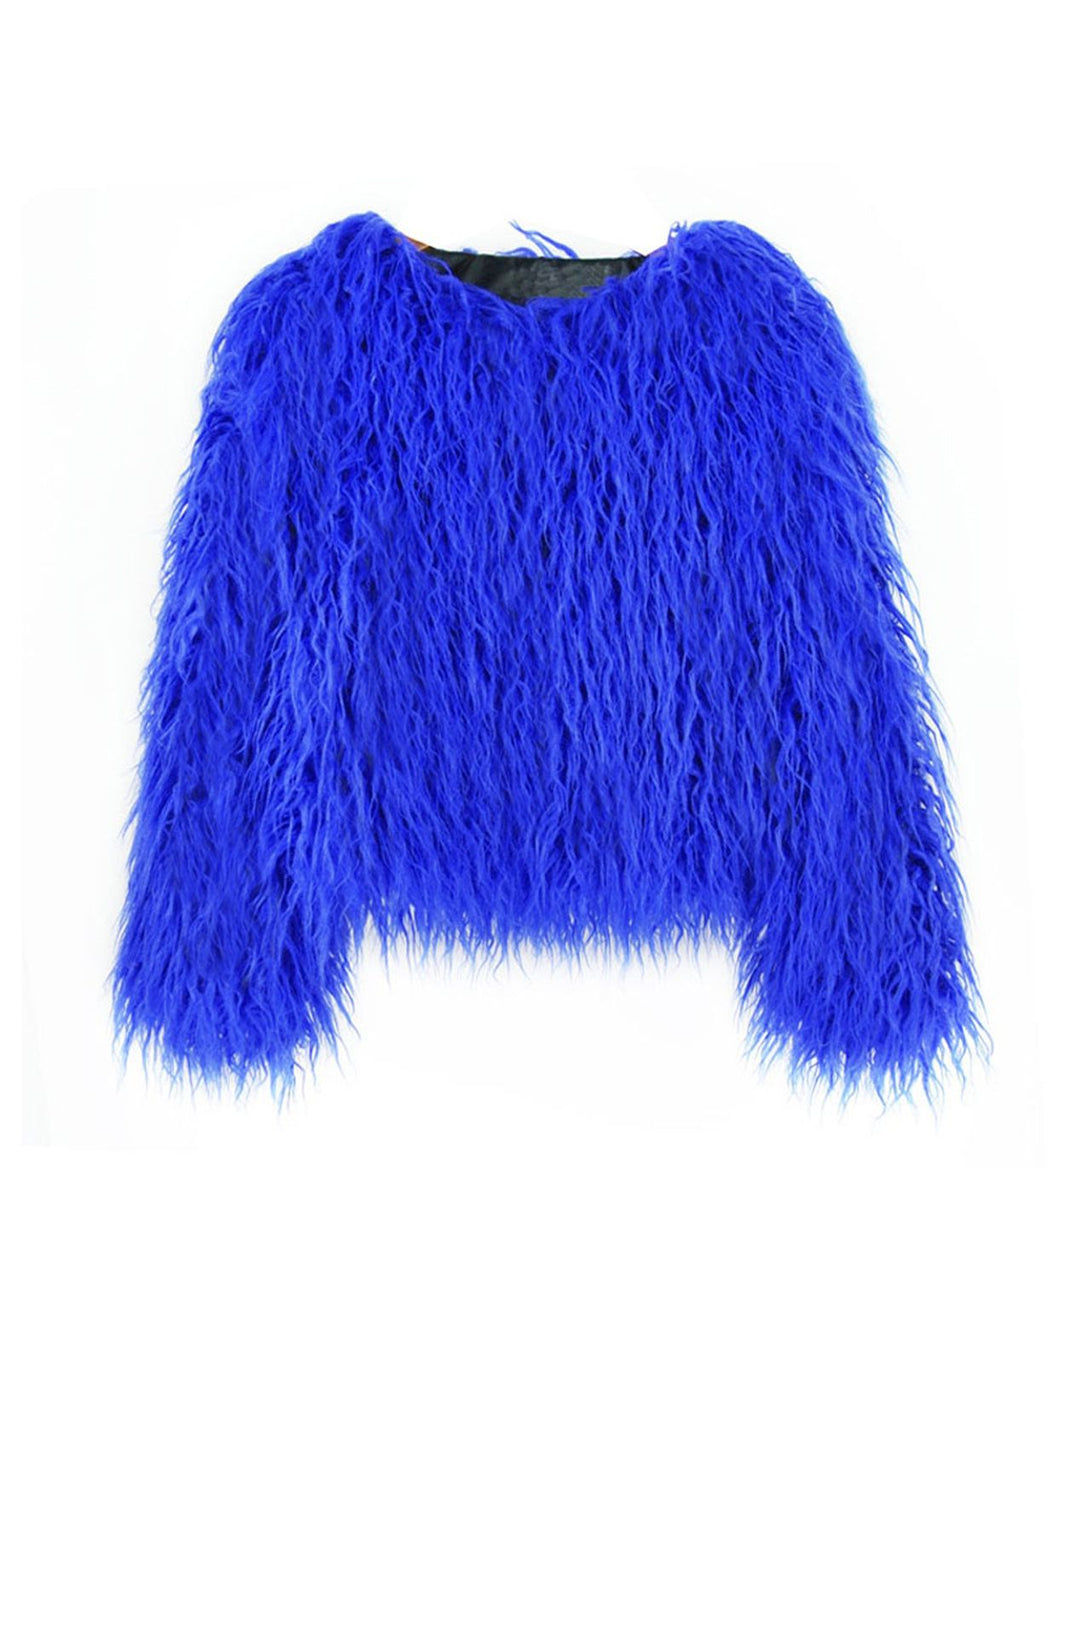 Designer BLue Faux Fur Jacket in Blue Fur Jacket